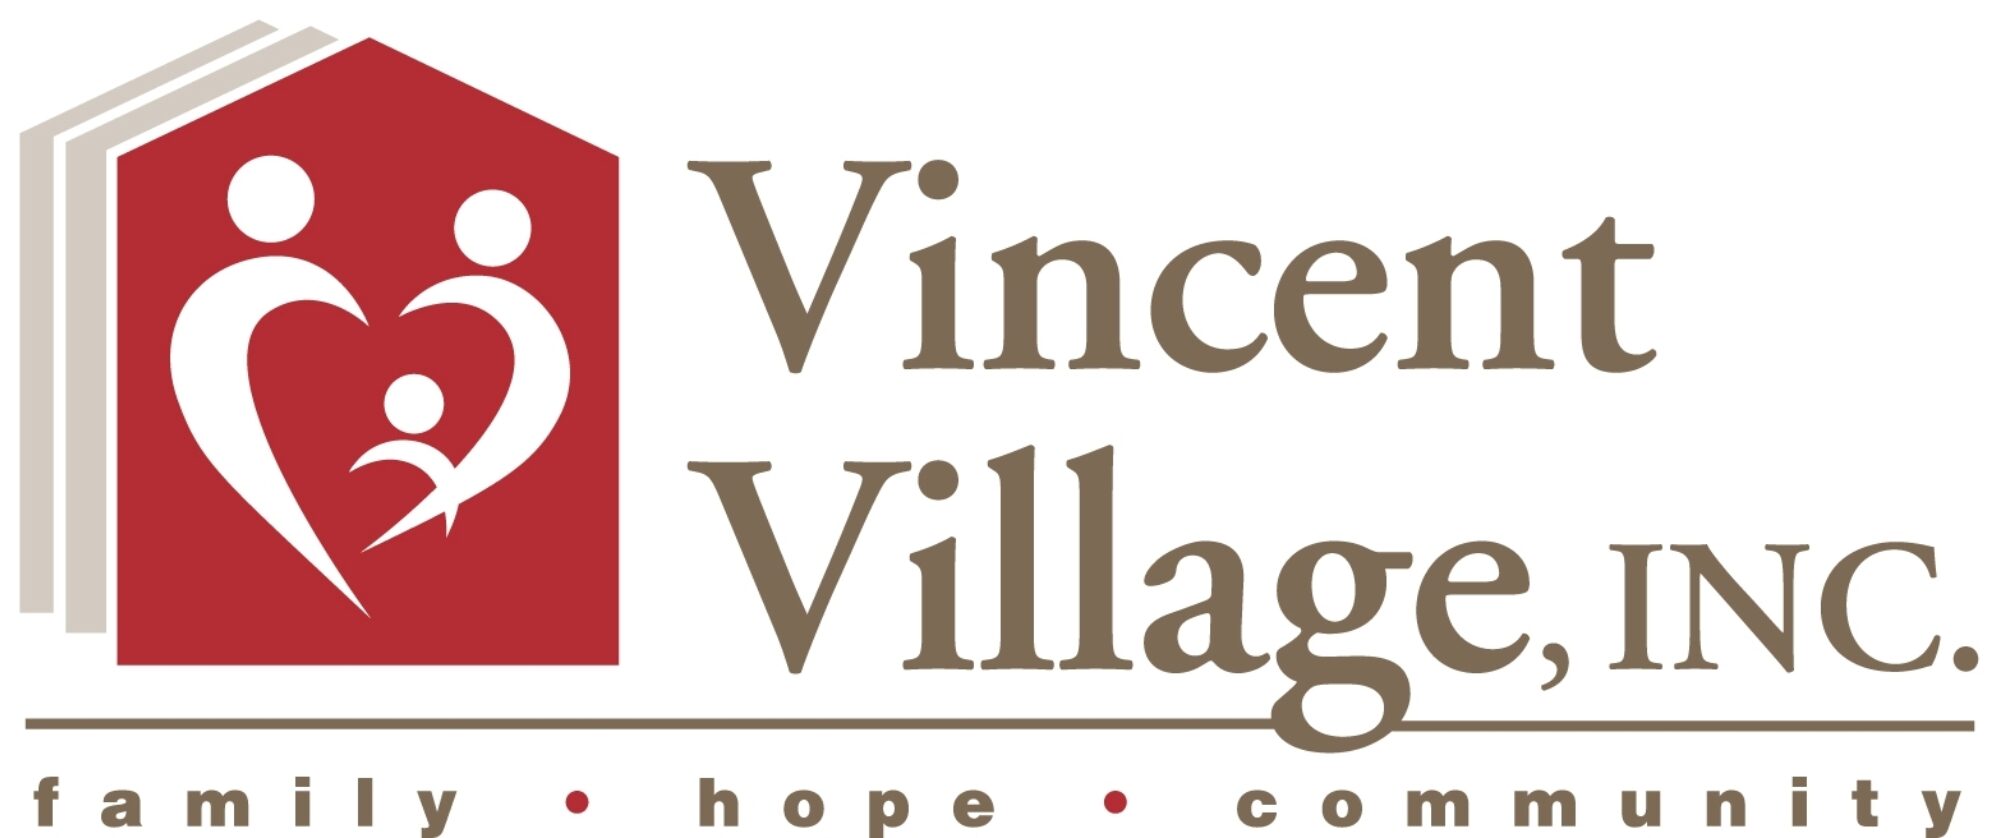 White Vincent Village, Inc logo